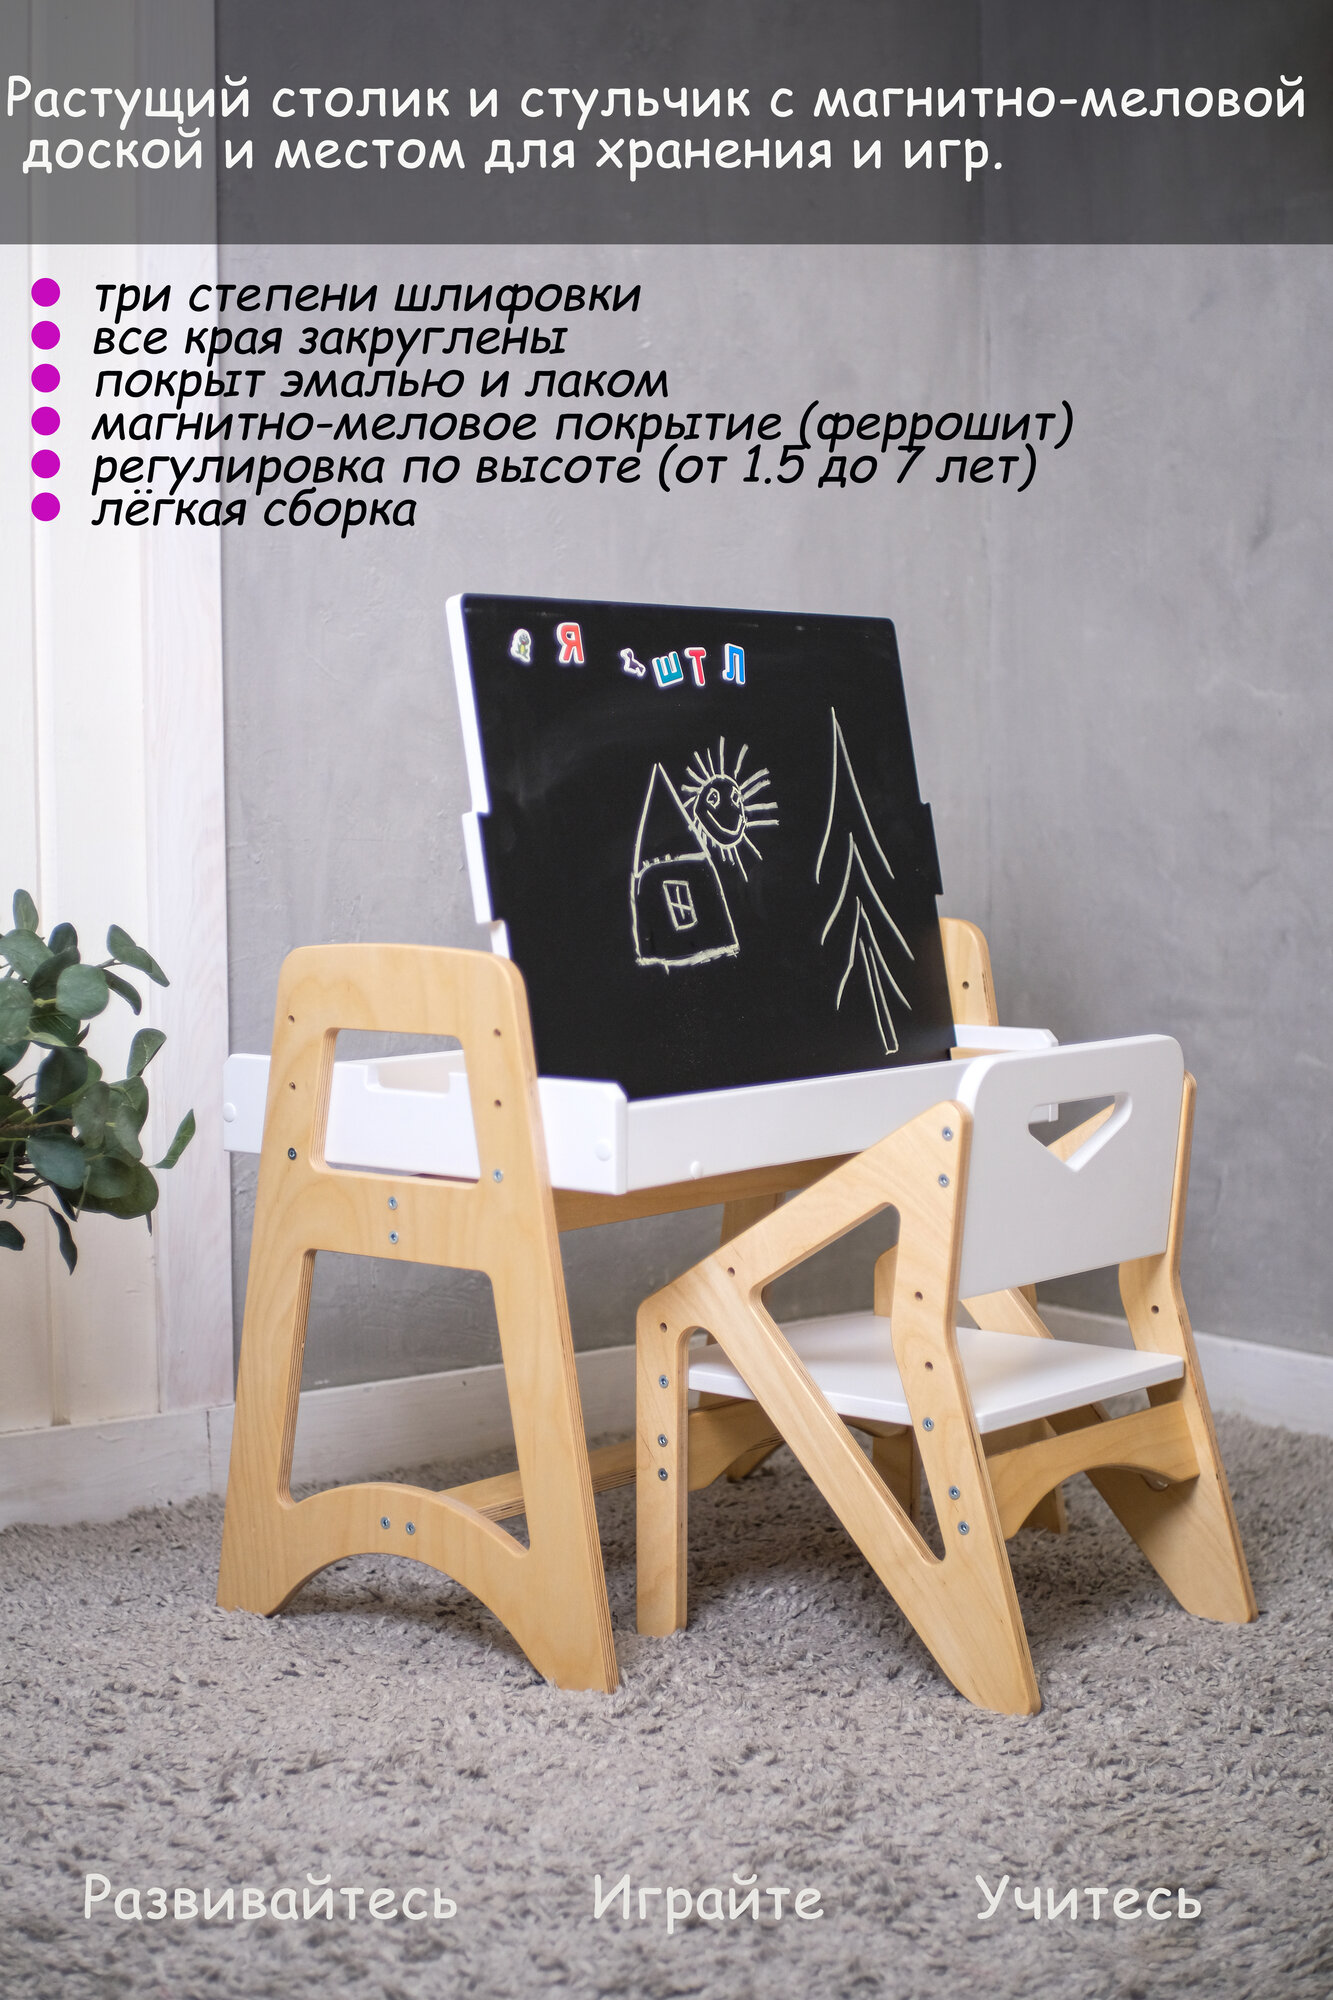 Детский столик и стульчик растущие с магнитно-грифельным мальбертом